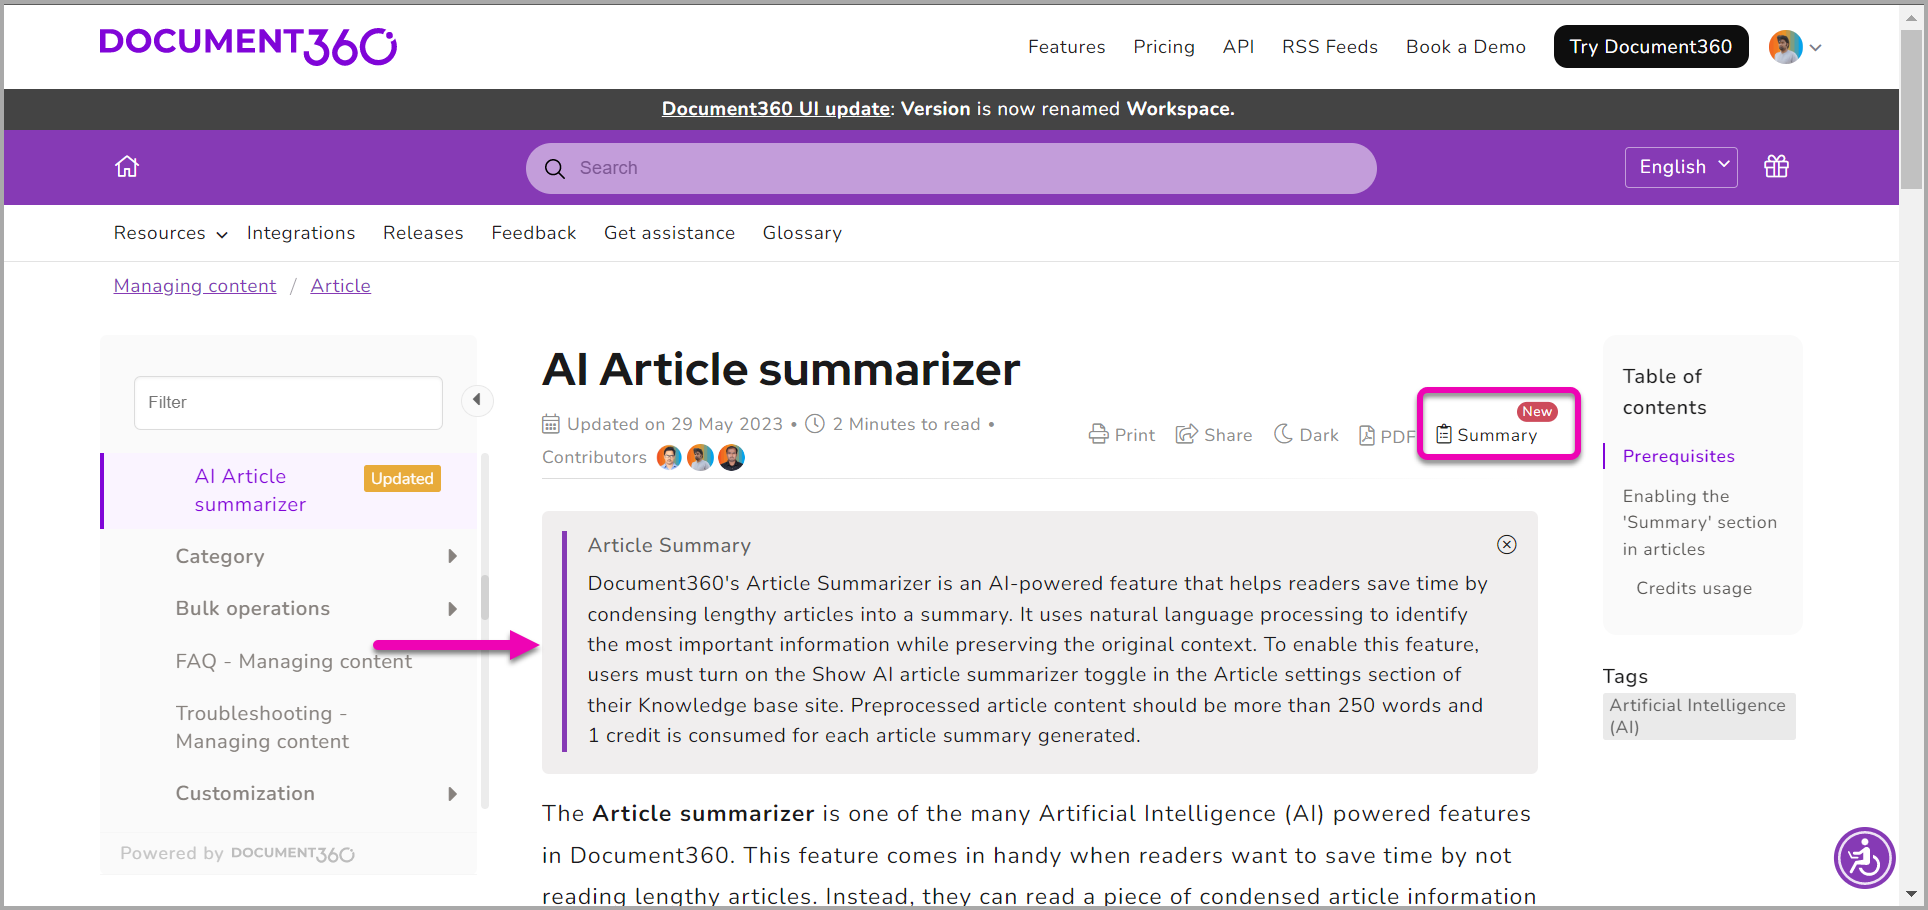 AI Article summarizer